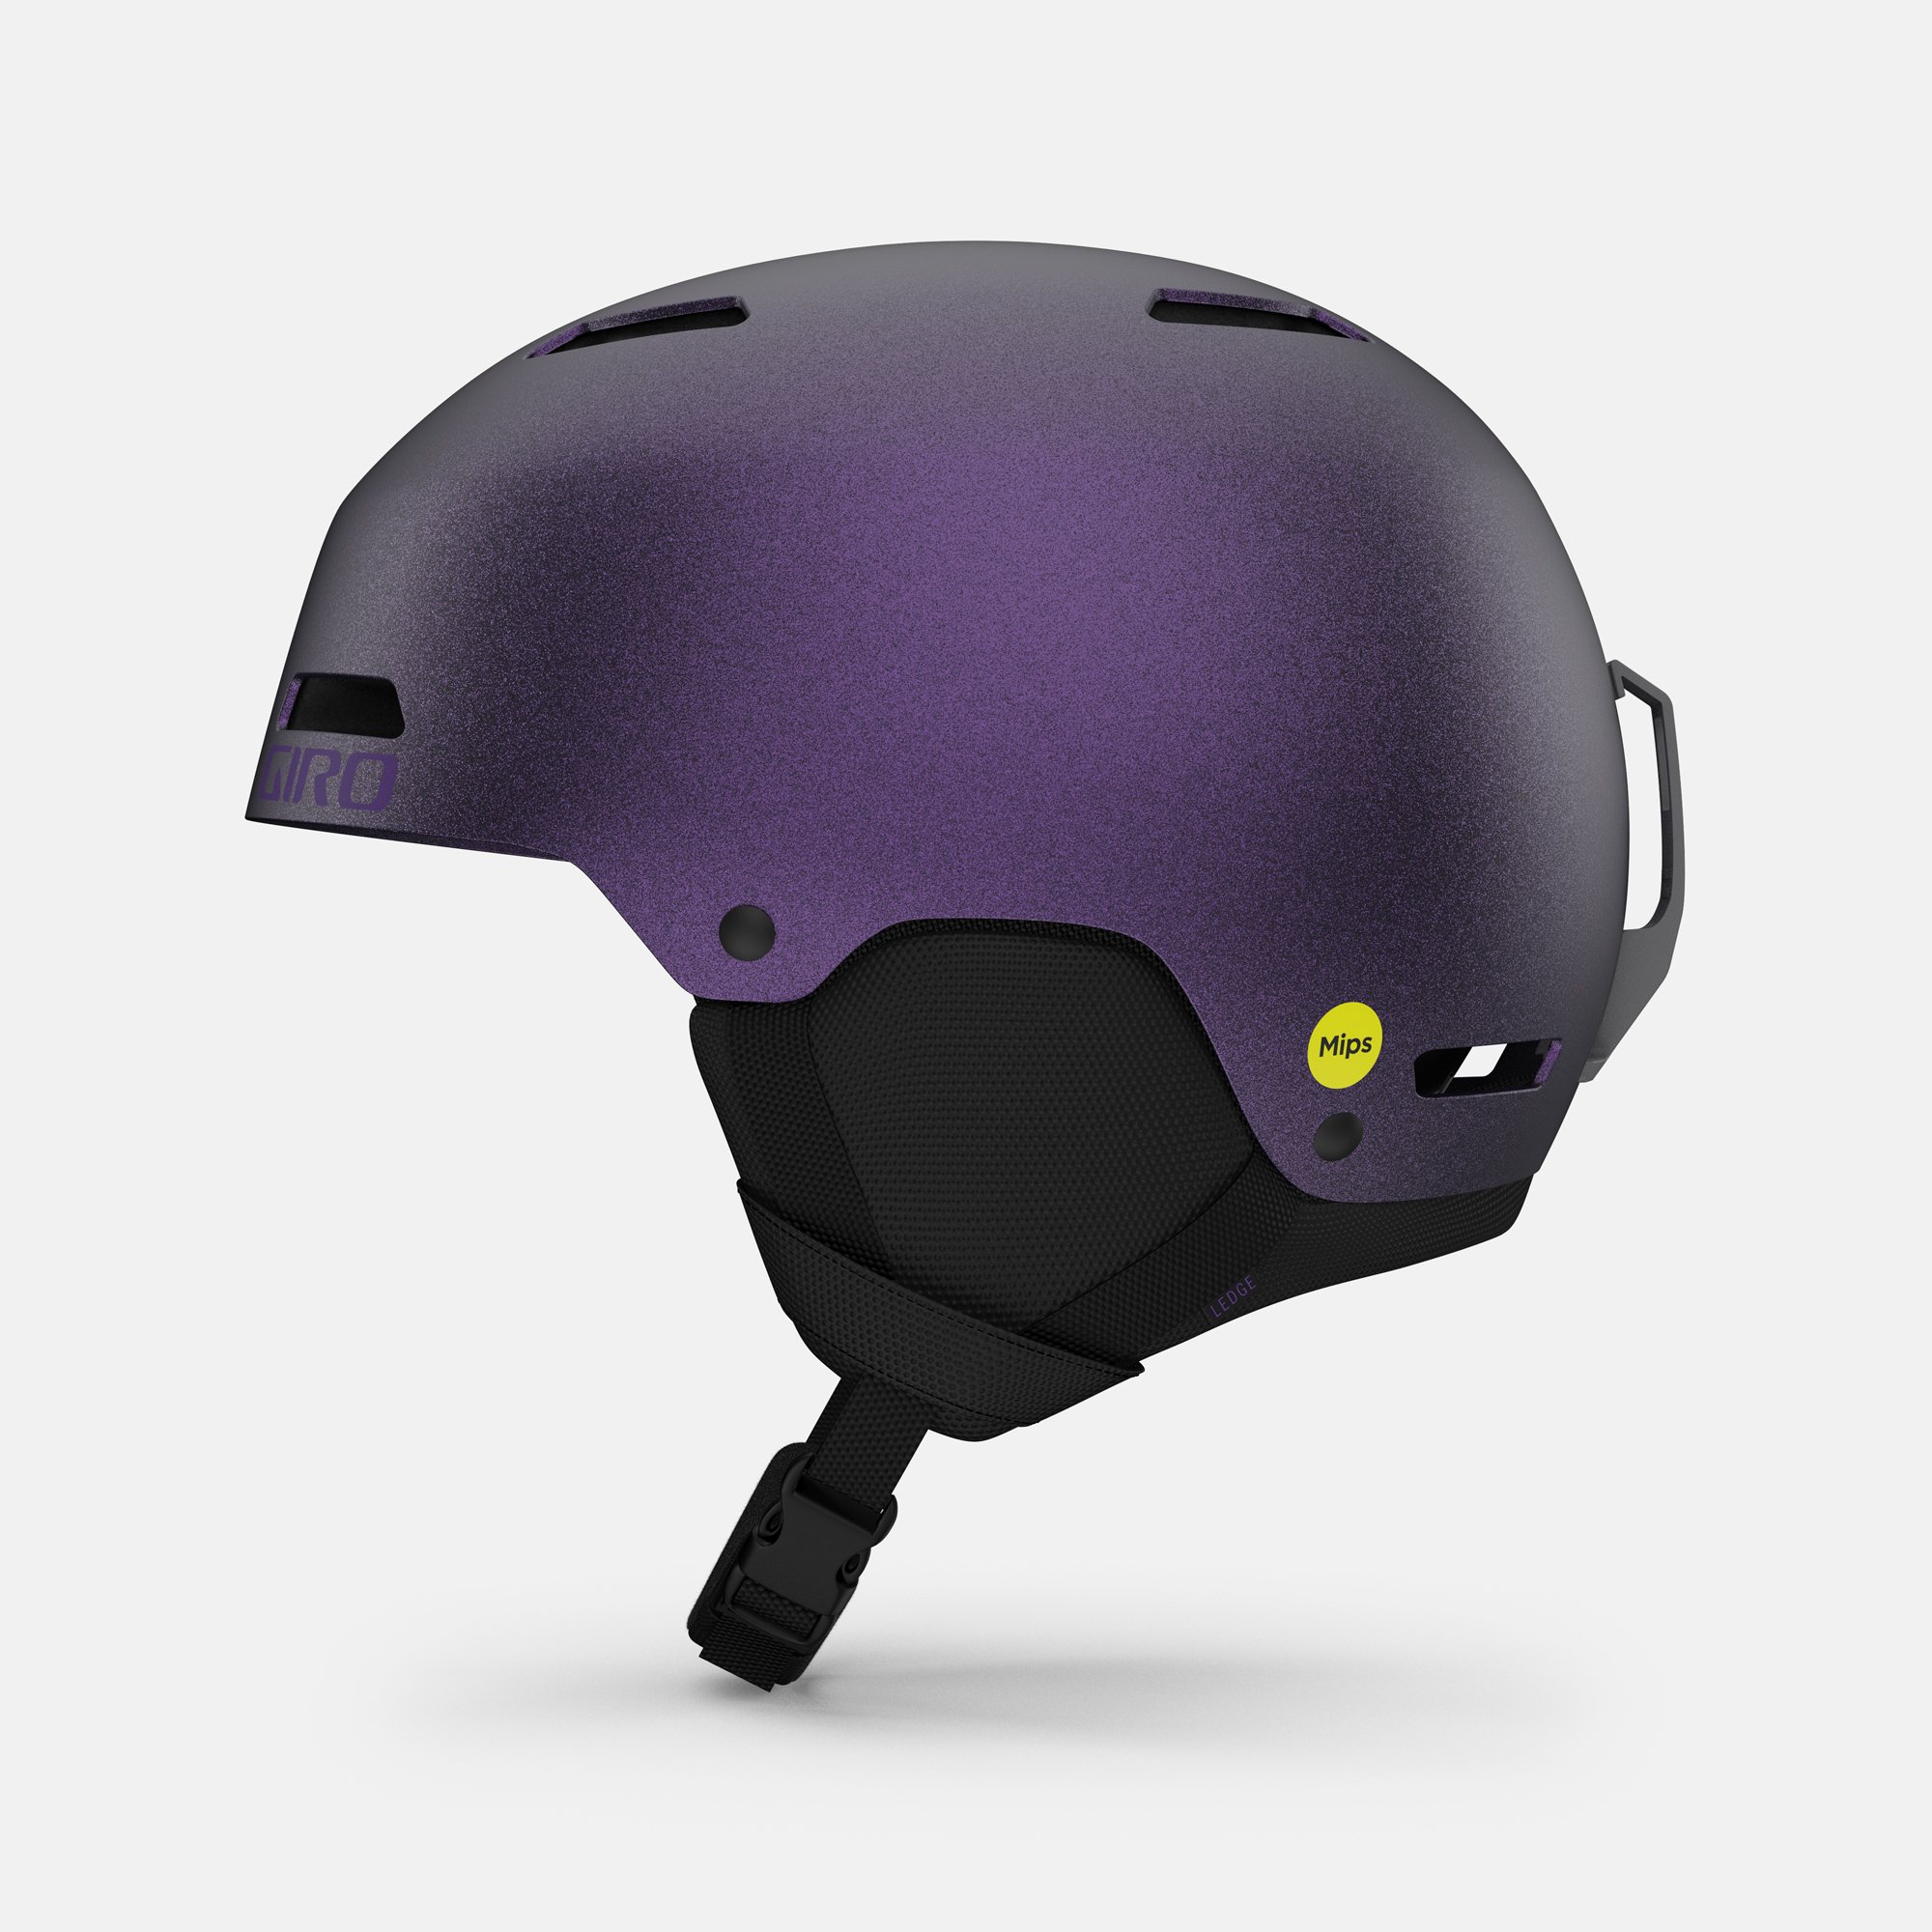 Switchblade Mips Helmet | Giro